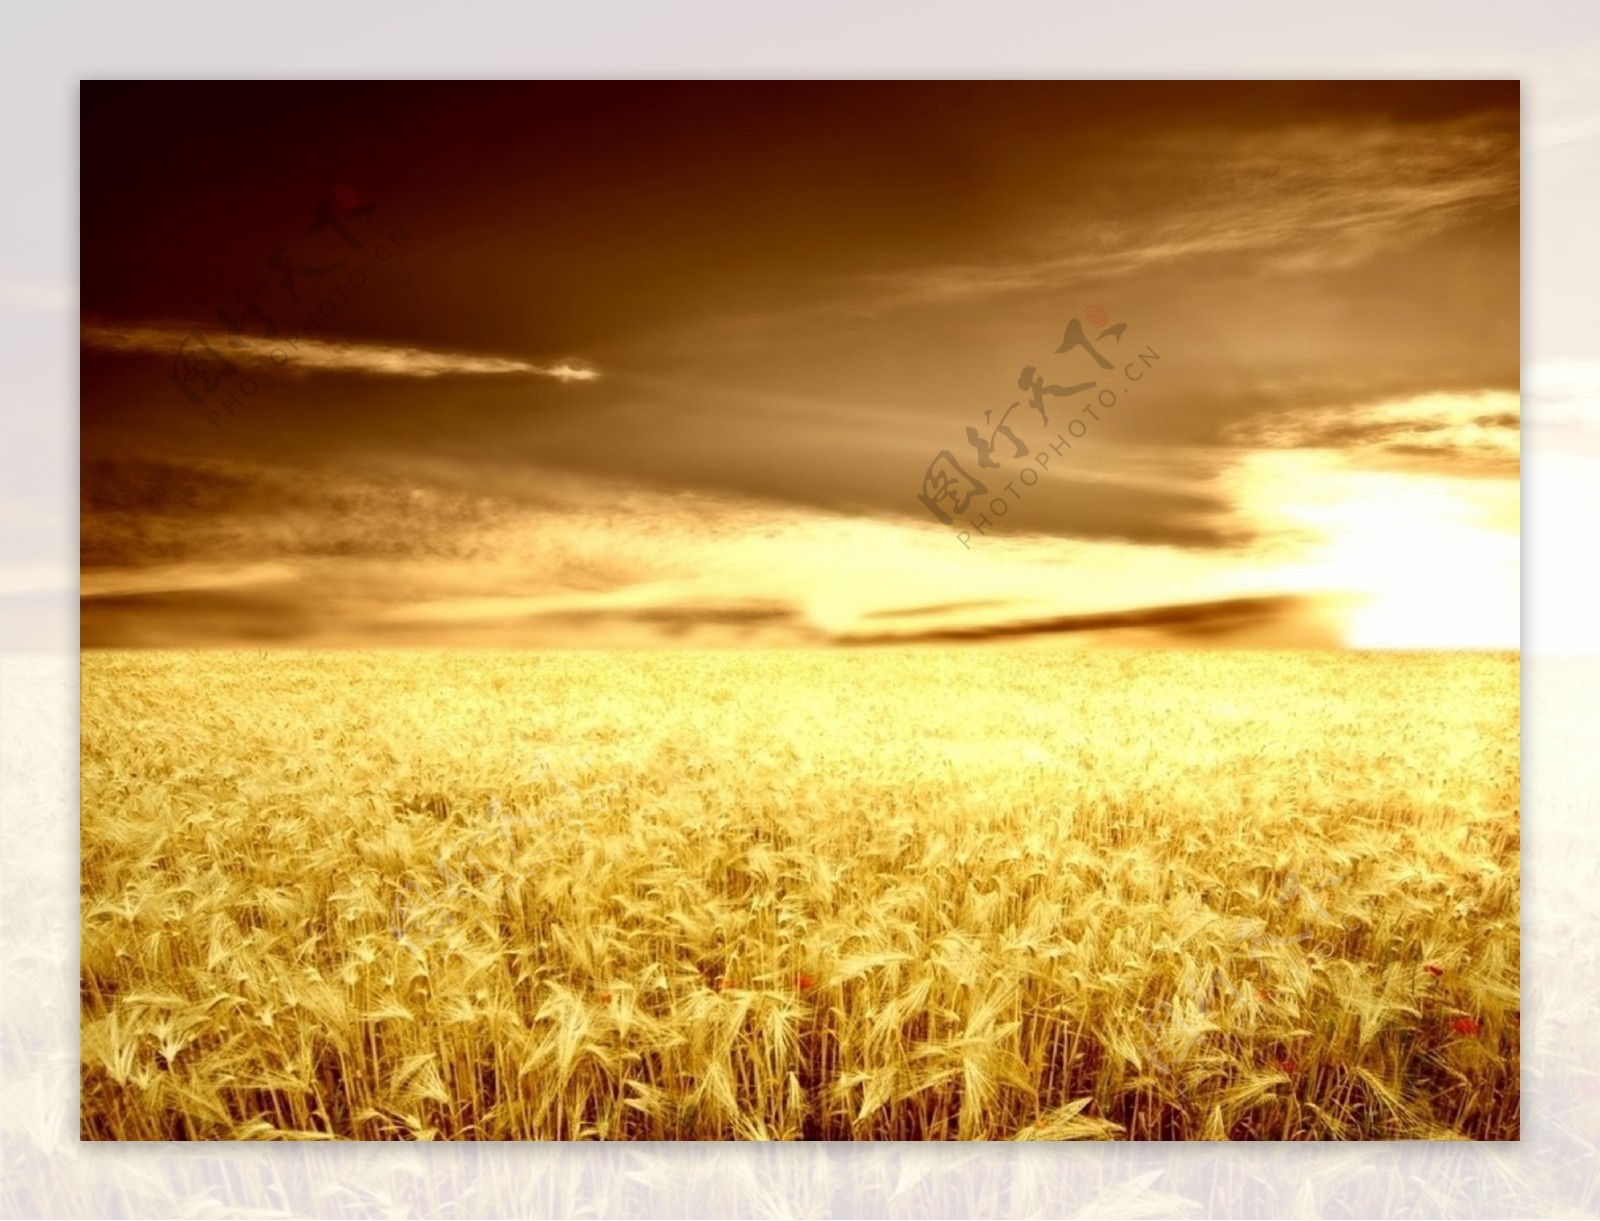 金黄色的麦田阳光下的麦田高清晰美图